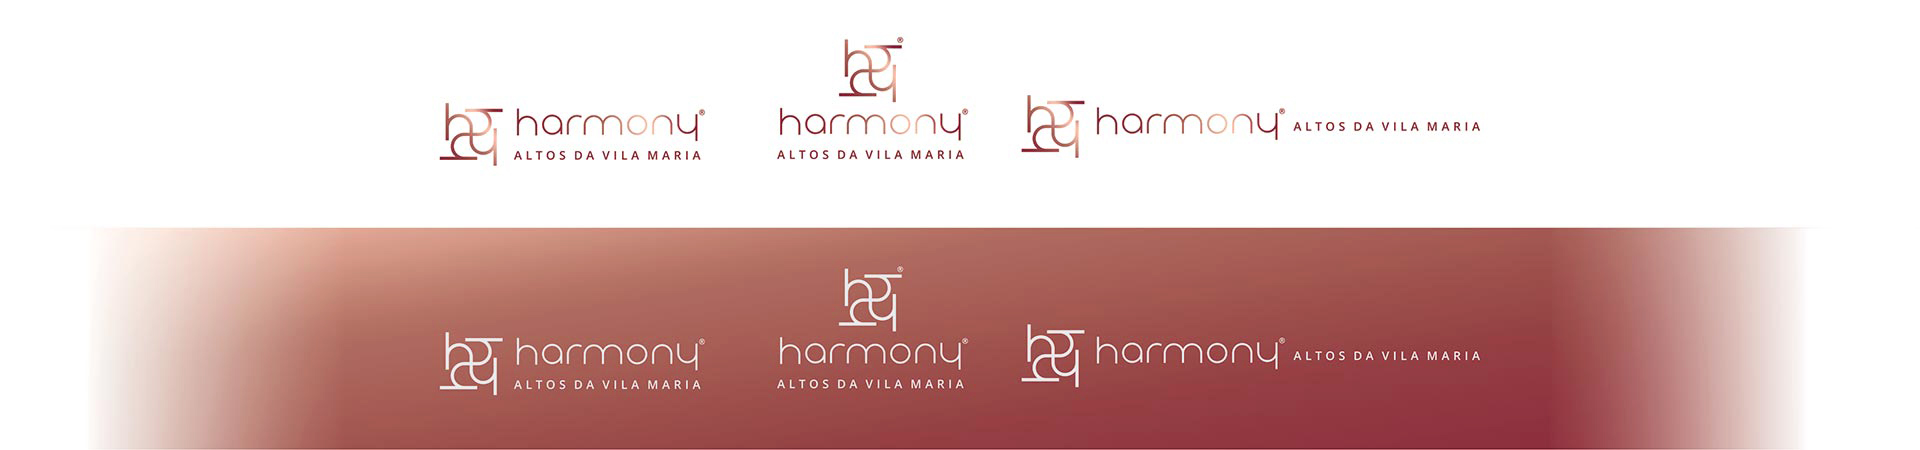 Versões de Logotipo Harmony Altos da Vila Maria